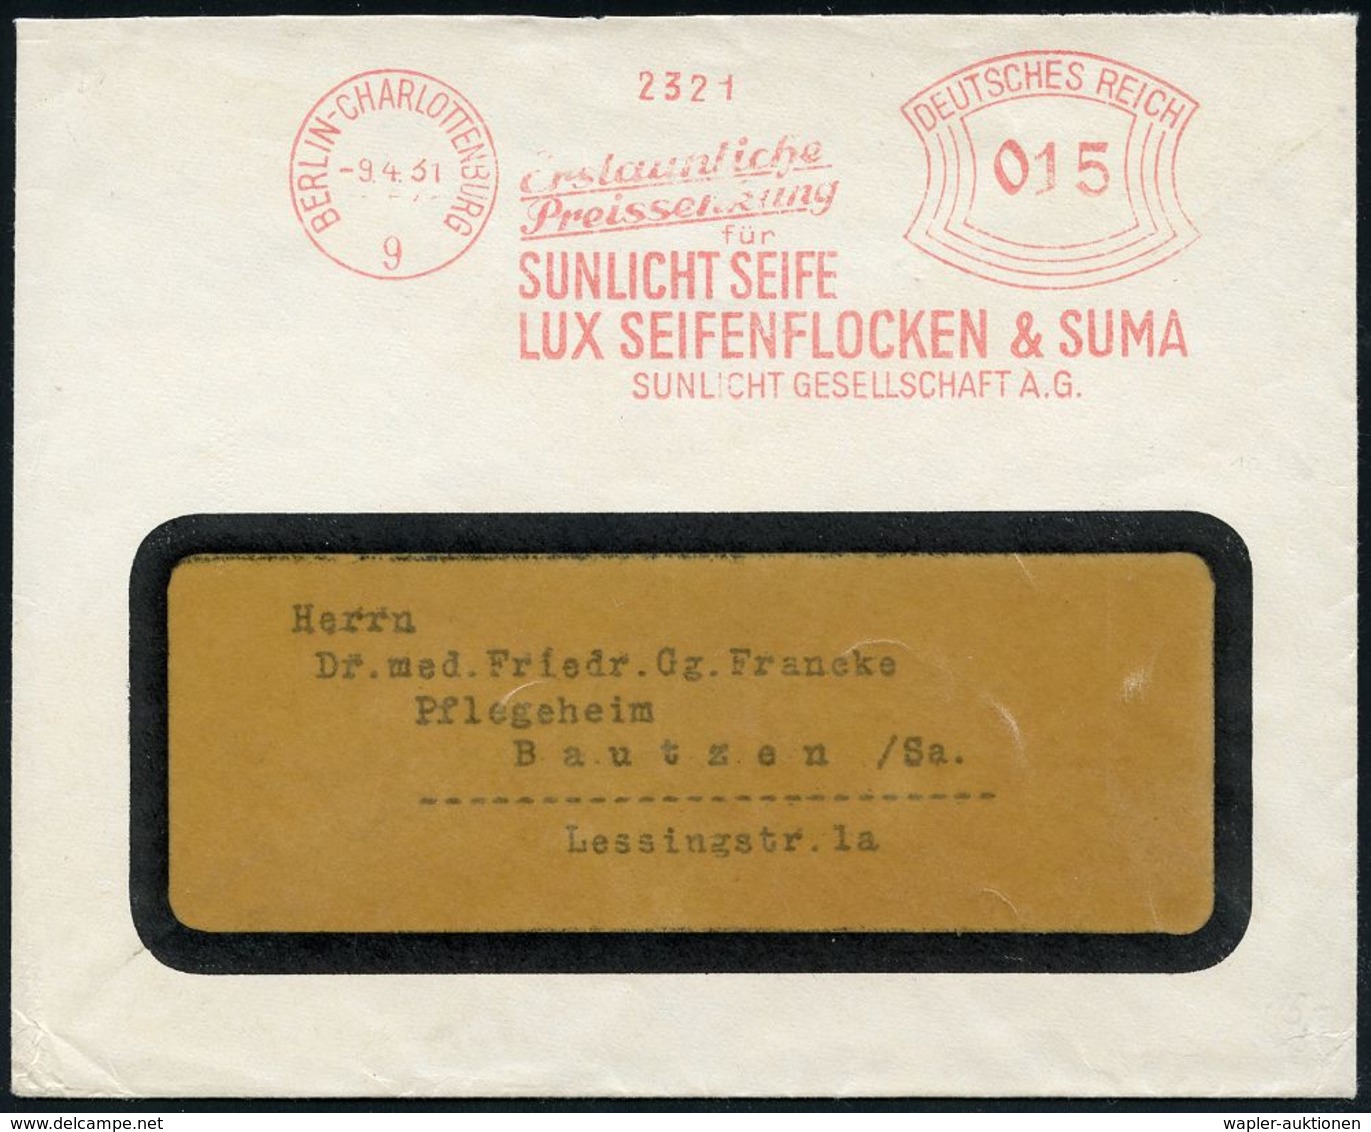 HYGIENE / KÖRPERPFLEGE : BERLIN-CHARLOTTENBURG/ 9/ ..Preissenkung/ Für/ SUNLICHT SEIFE/ LUX SEIFENFLOCKEN & SUMA/  SUN-L - Pharmacy